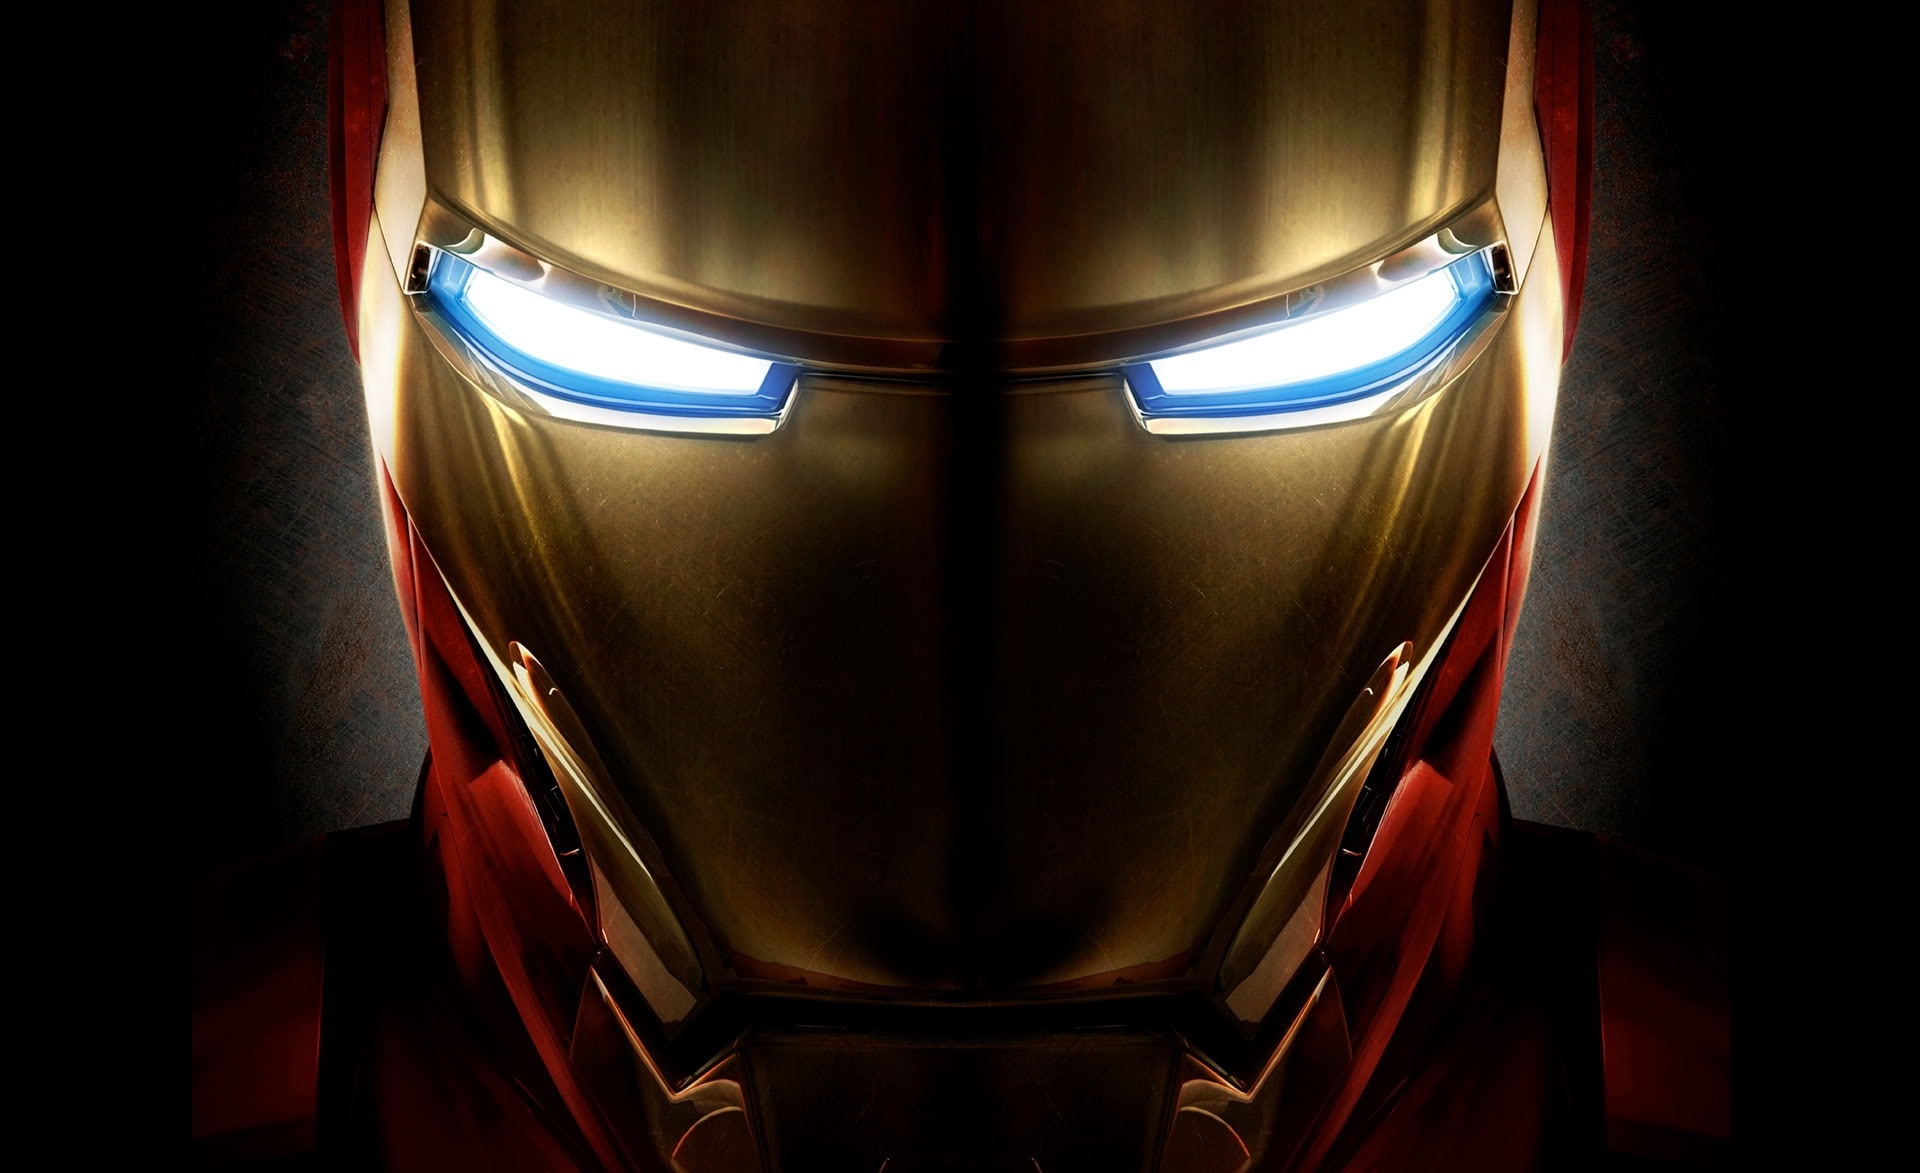 Iron Man Helmet, Marvel Iron-Man wallpaper, Movies, indoors, illuminated